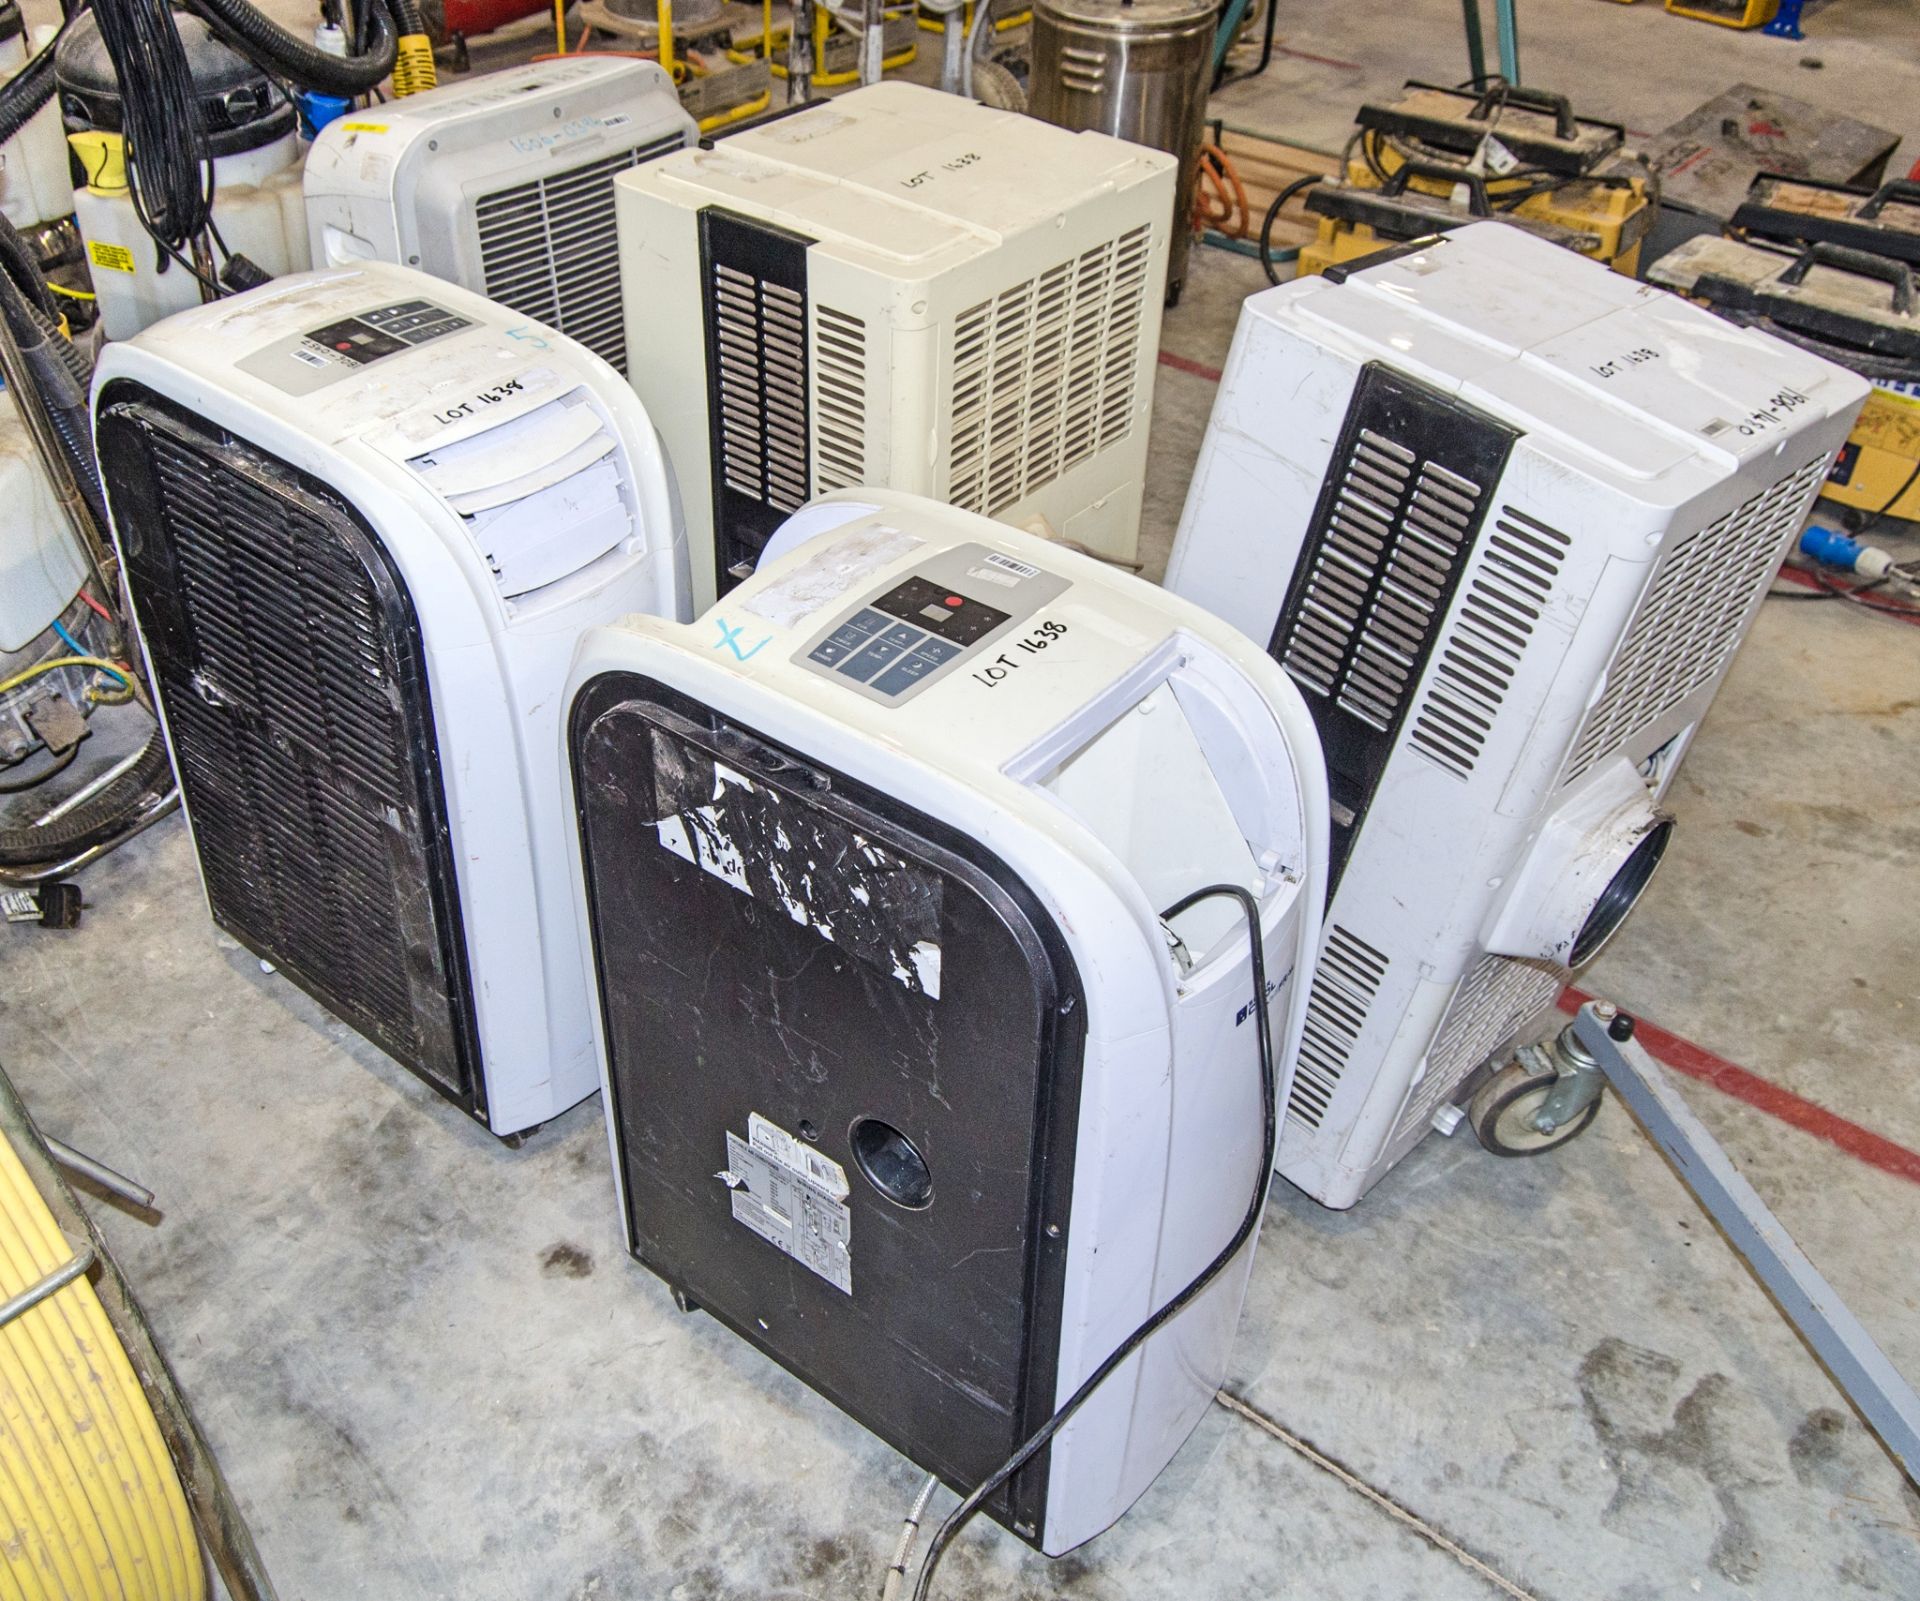 5 - various 240v air conditioning units